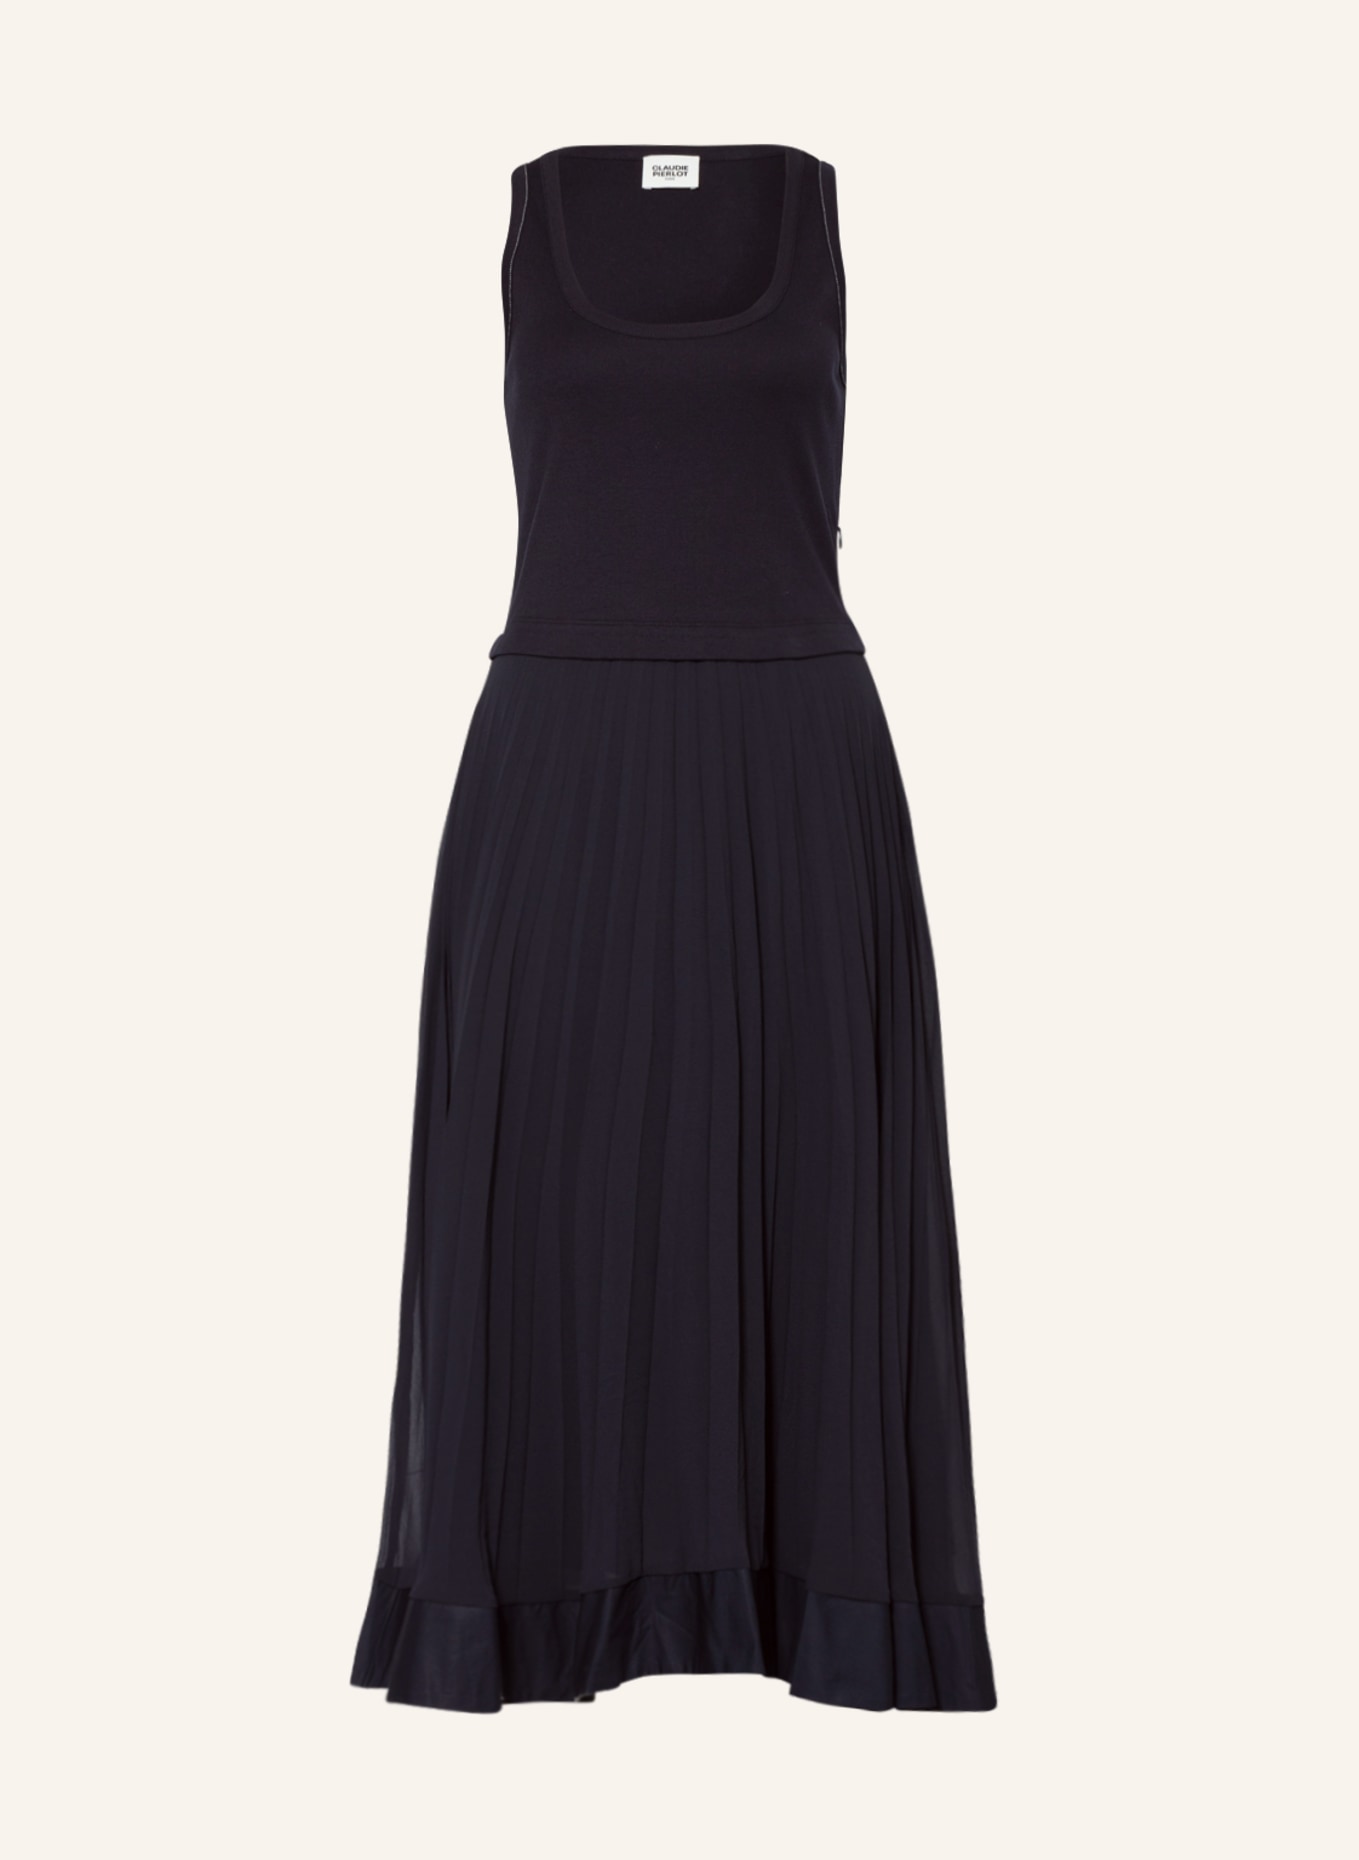 CLAUDIE PIERLOT Kleid mit Plissees, Farbe: DUNKELBLAU (Bild 1)